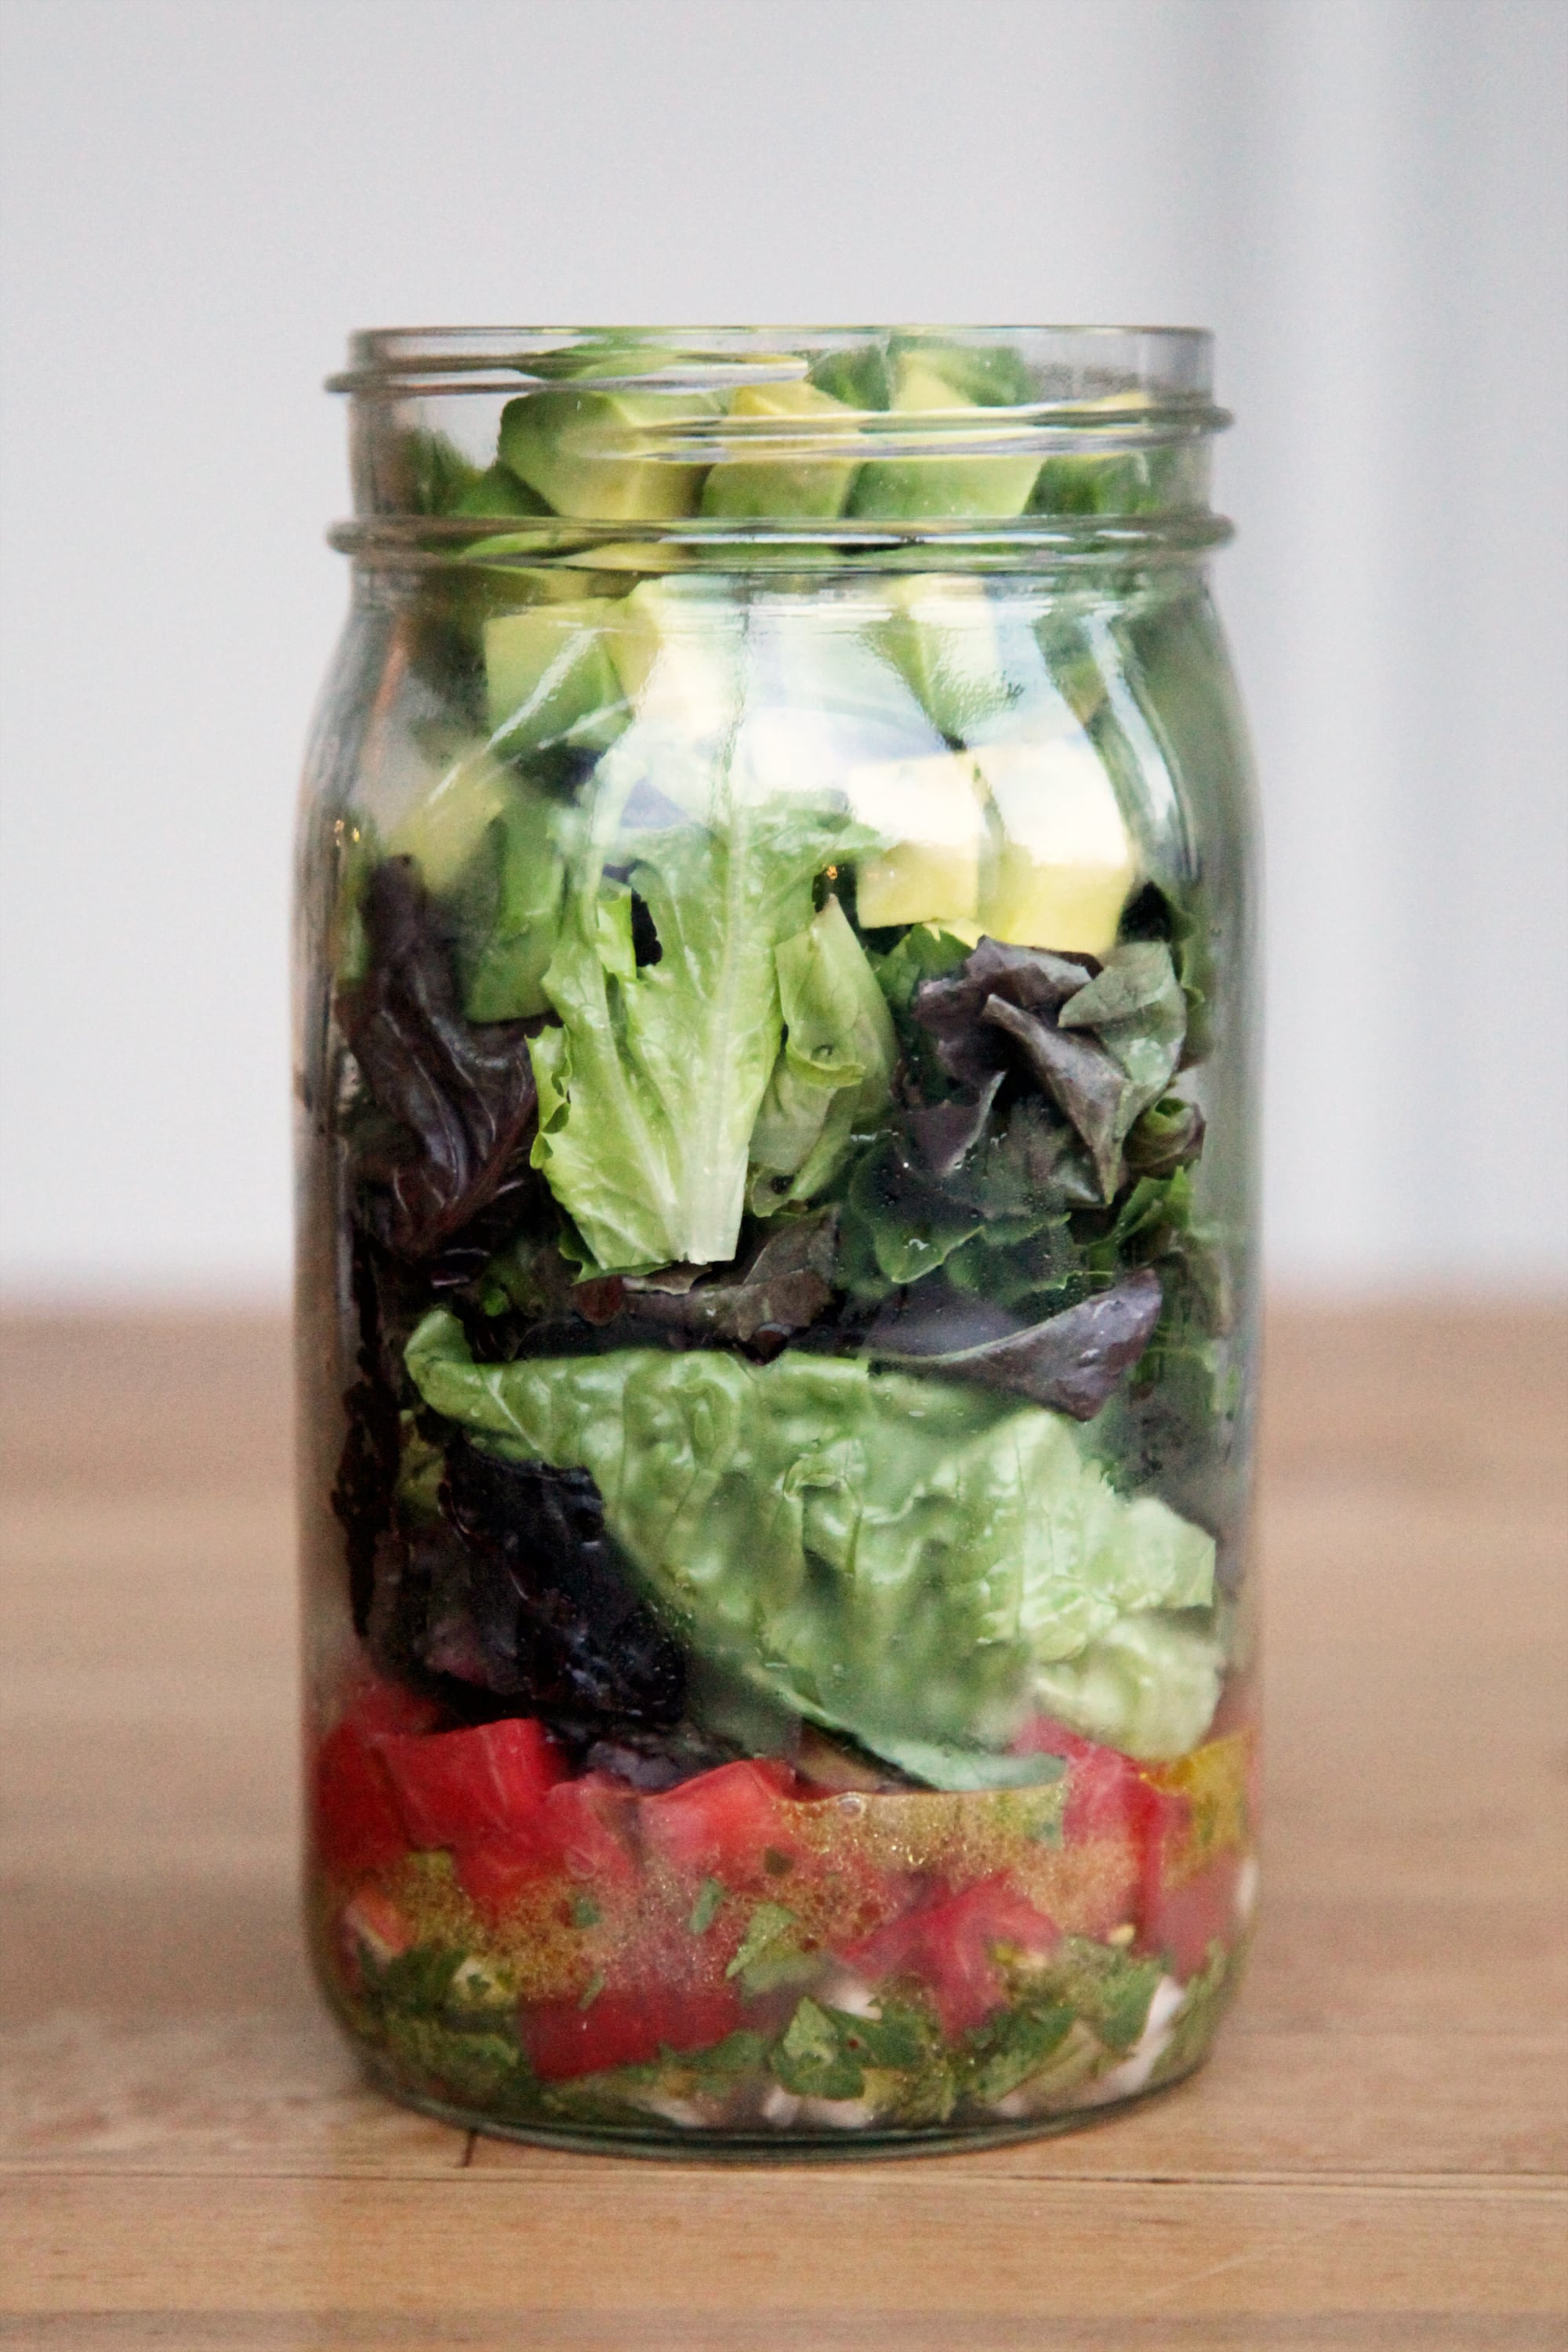 Top 12 Mason Jar Salad Recipes